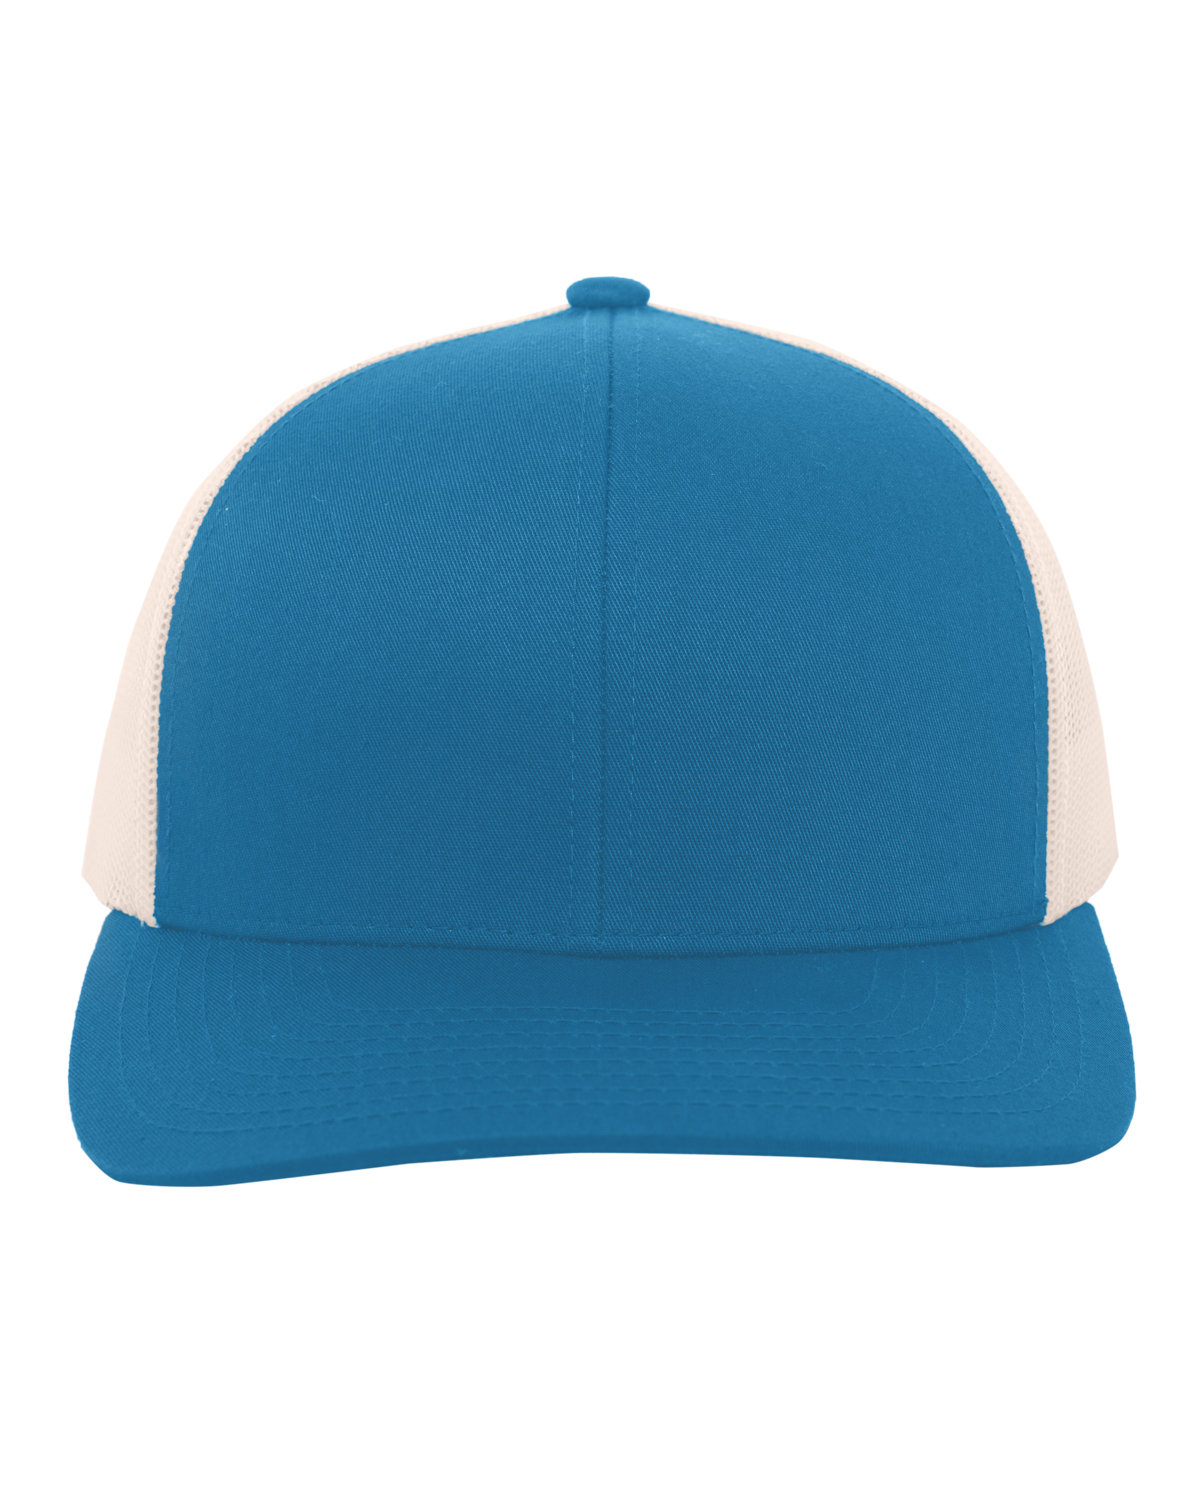 Pacific Headwear Trucker Snapback Hat PAN TL/ BEIGE 